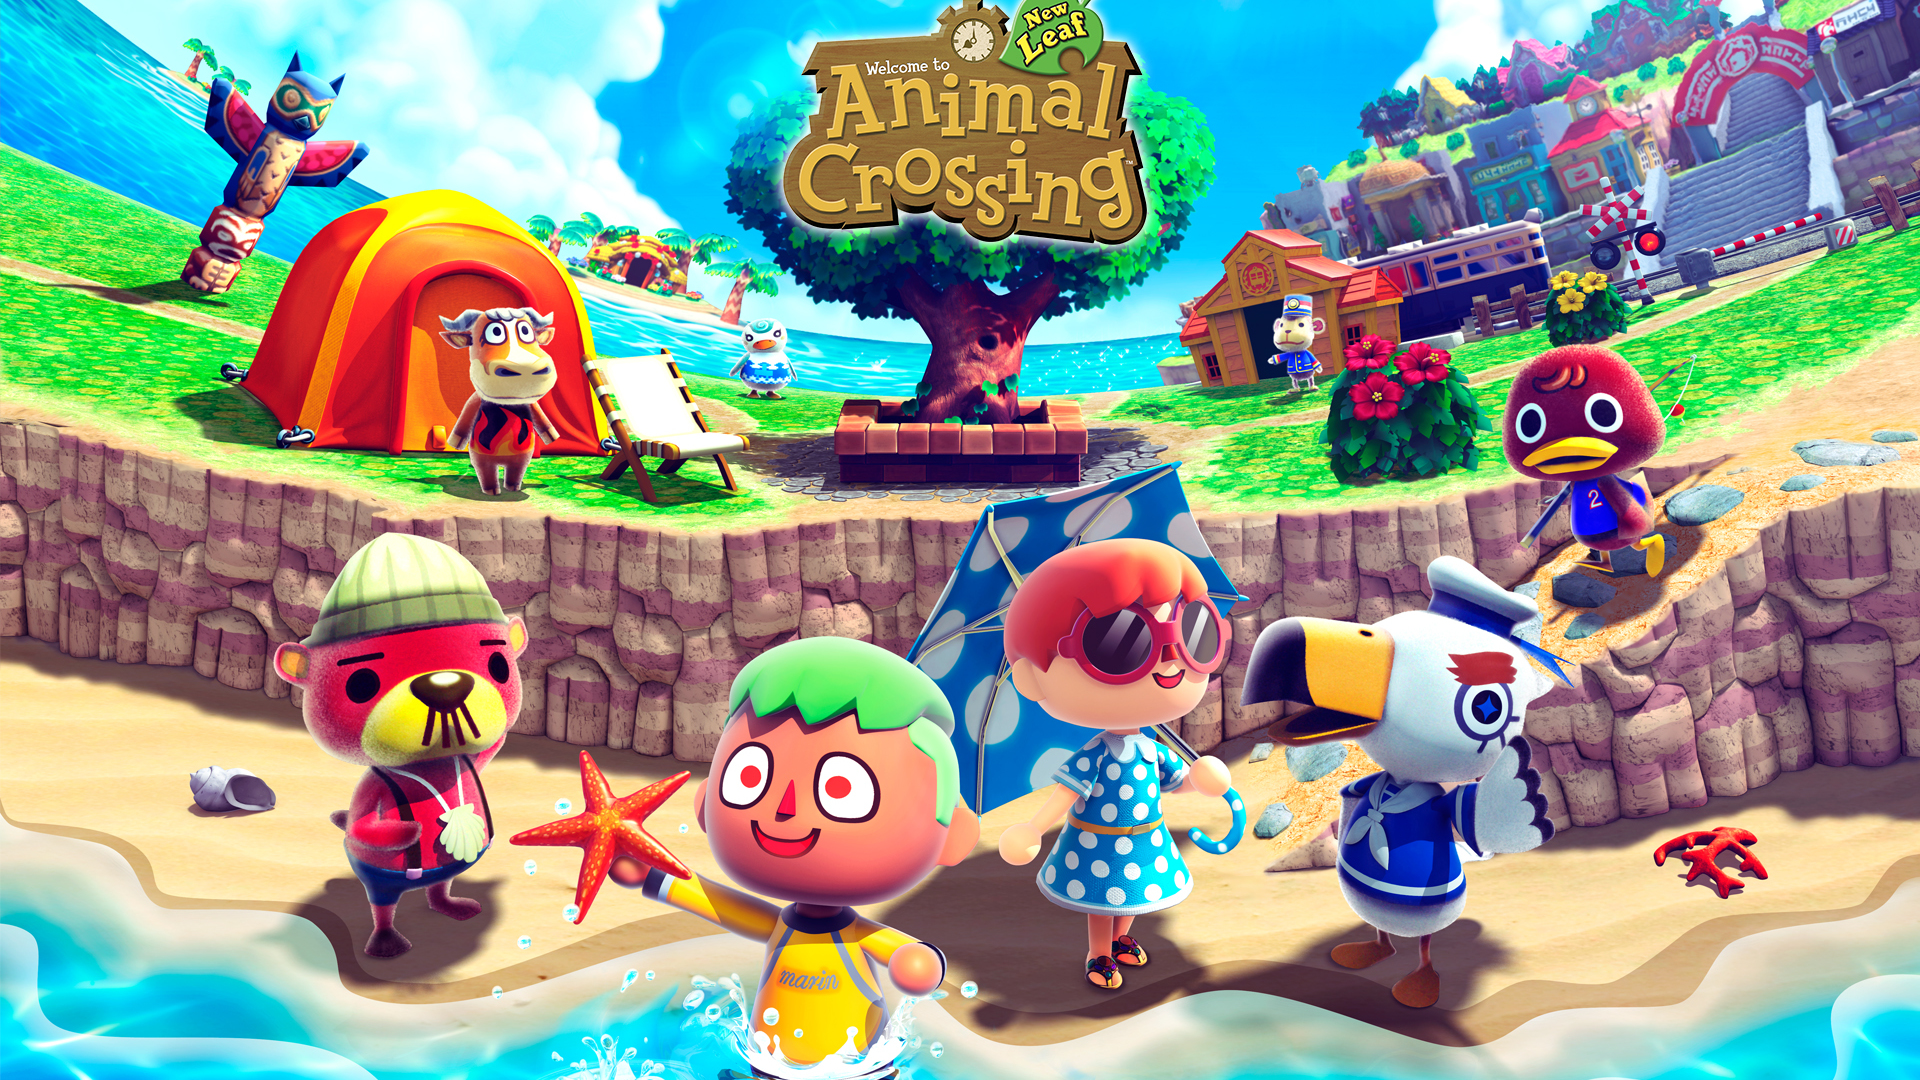 Animal Crossing Hd Wallpaper - Wallpapersafari